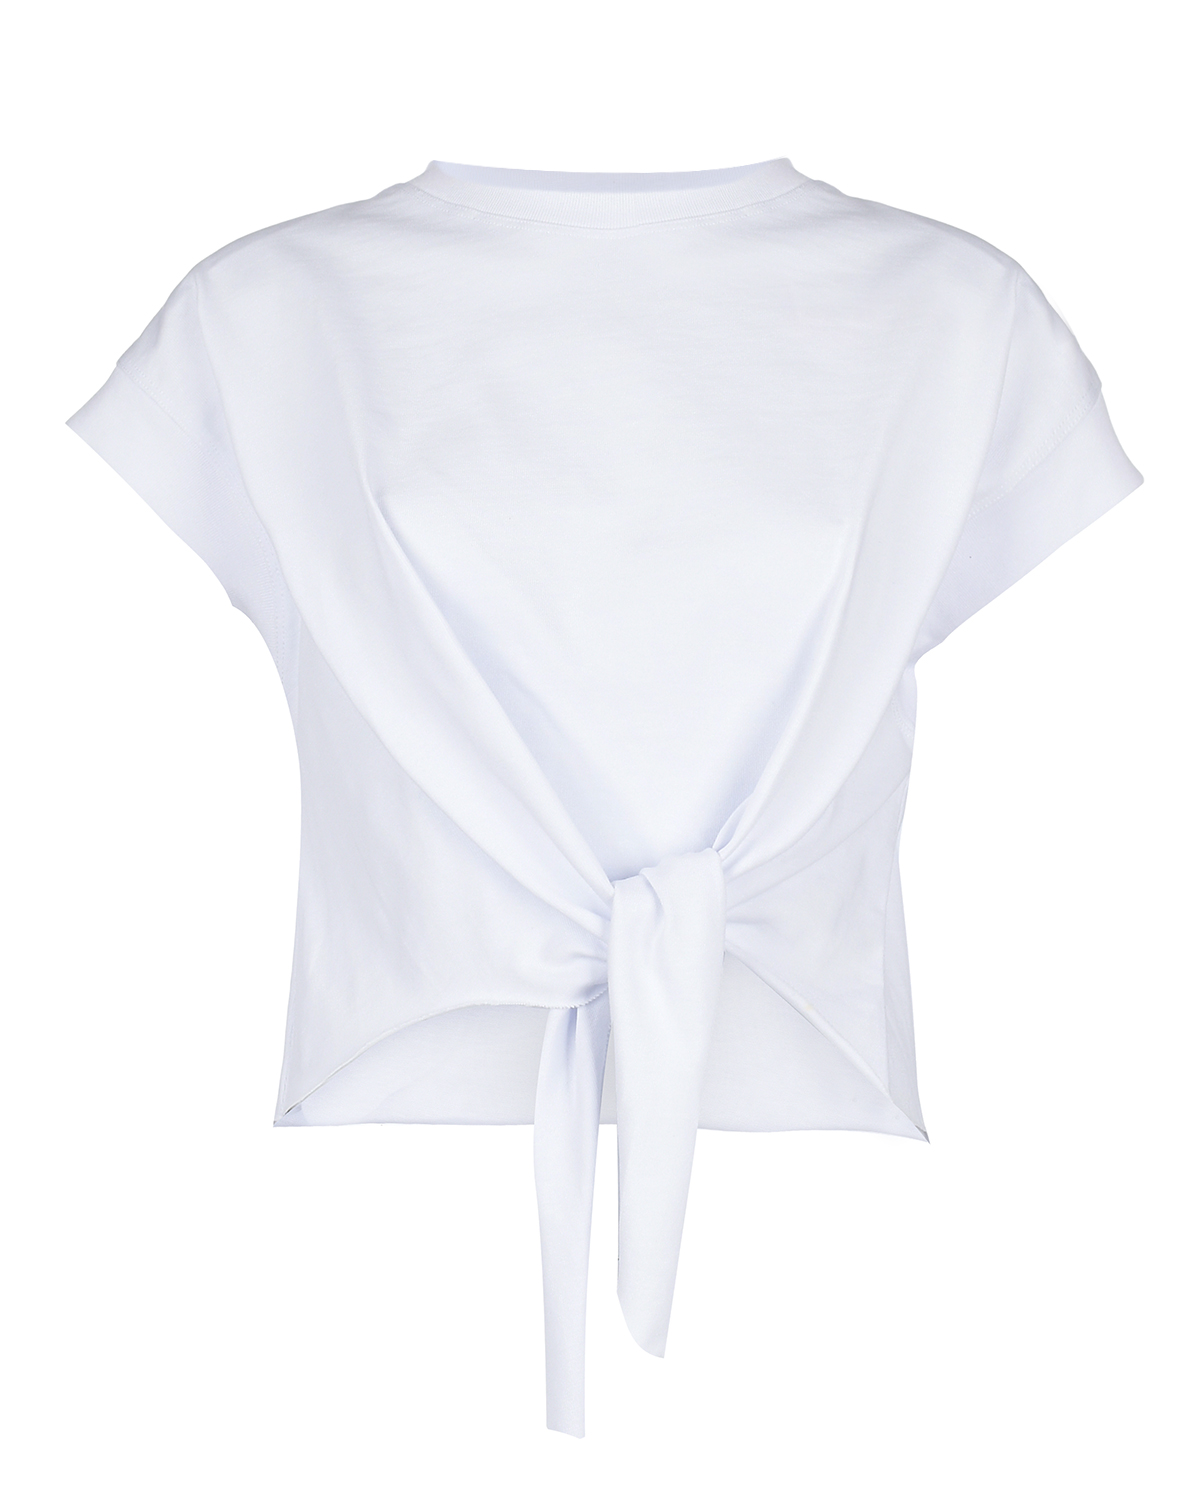 Белая футболка с подплечниками ALINE футболка с неоновой окантовкой и принтом белая msgm